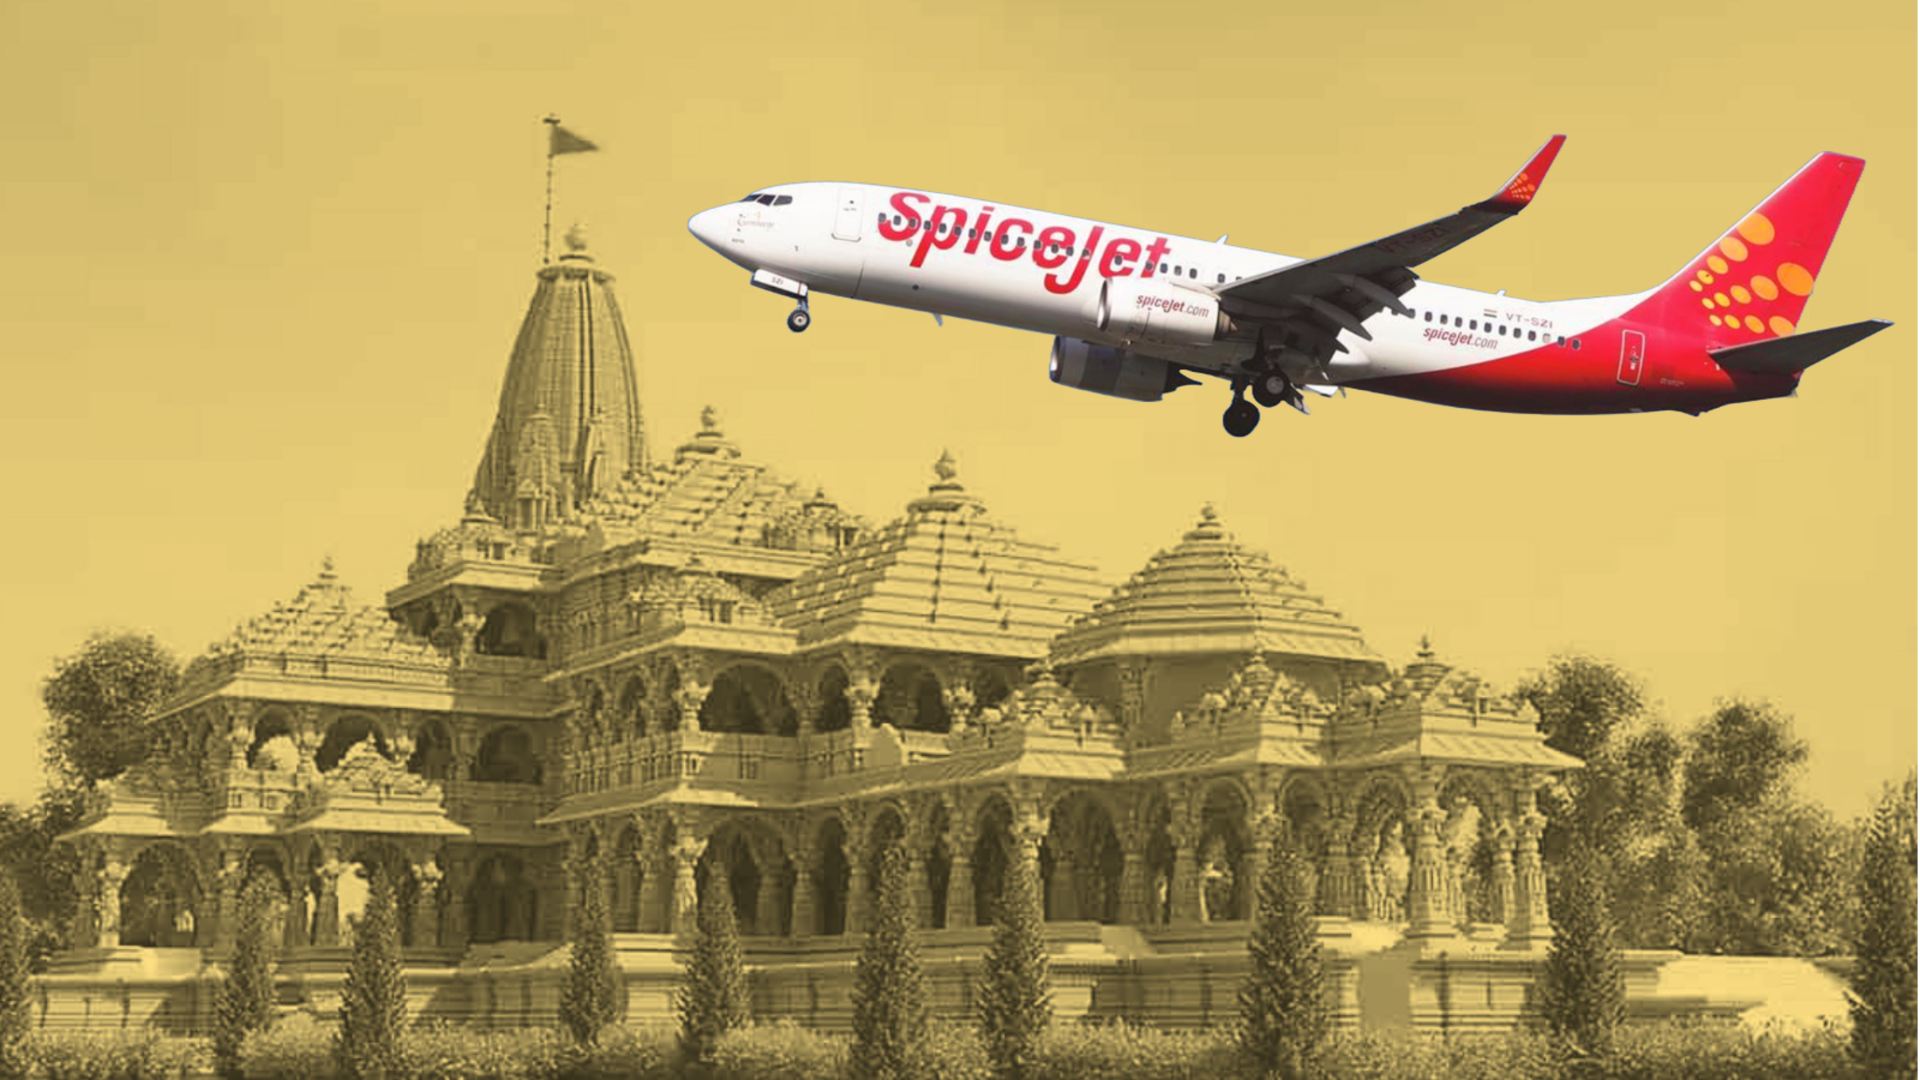 राम मंदिर कार्यक्रम: स्पाइसजेट की विशेष सेल, 1,622 रुपये में मिल रही अयोध्या की हवाई टिकट